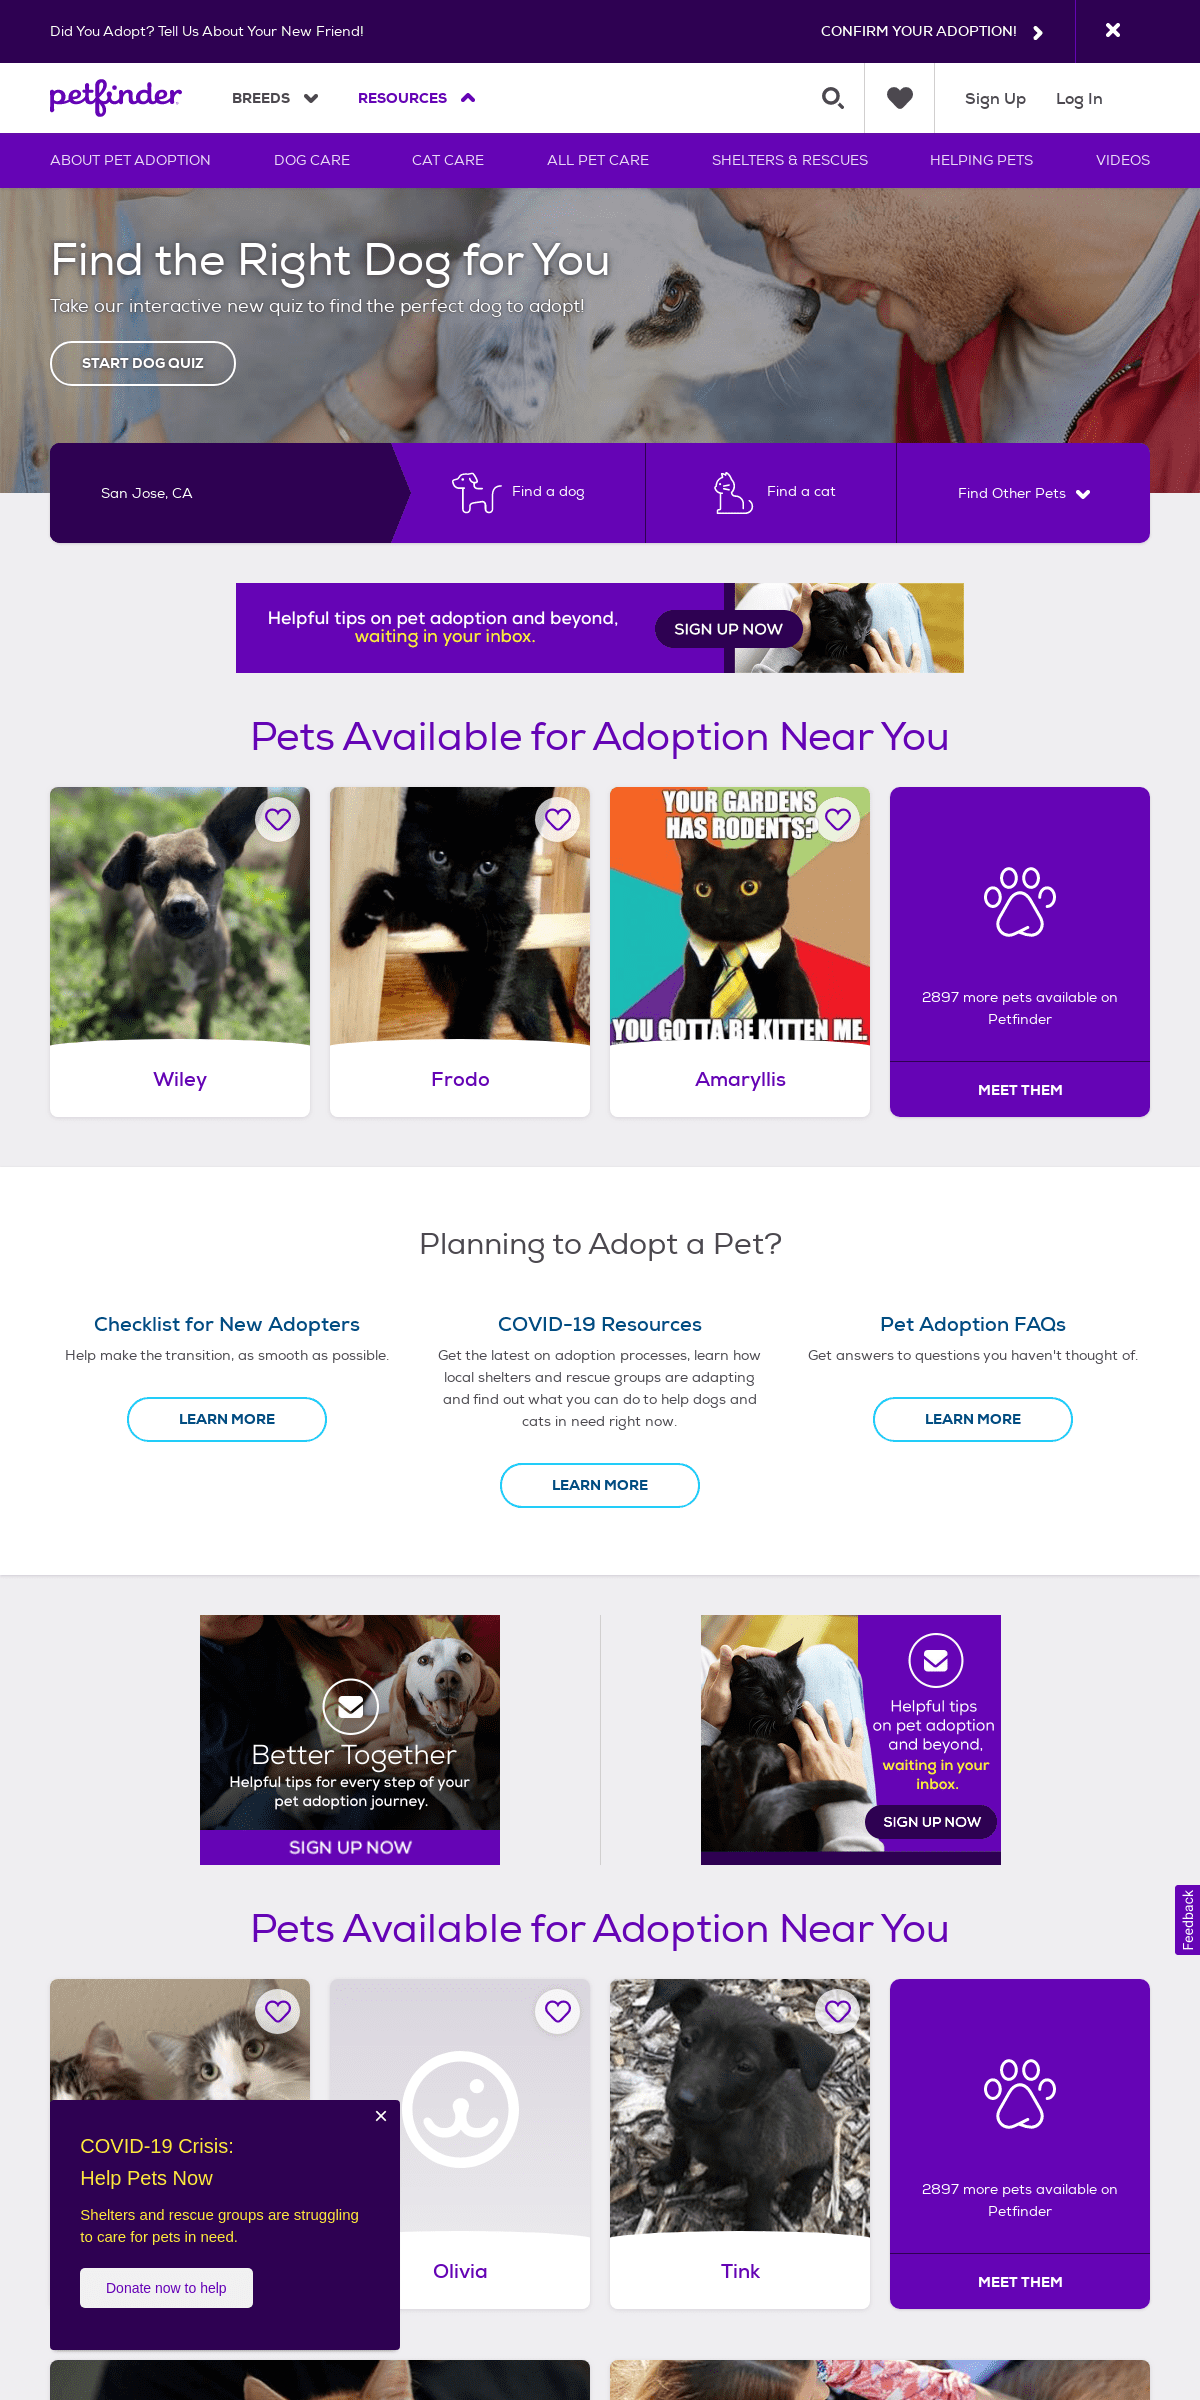 A complete backup of petfinder.org